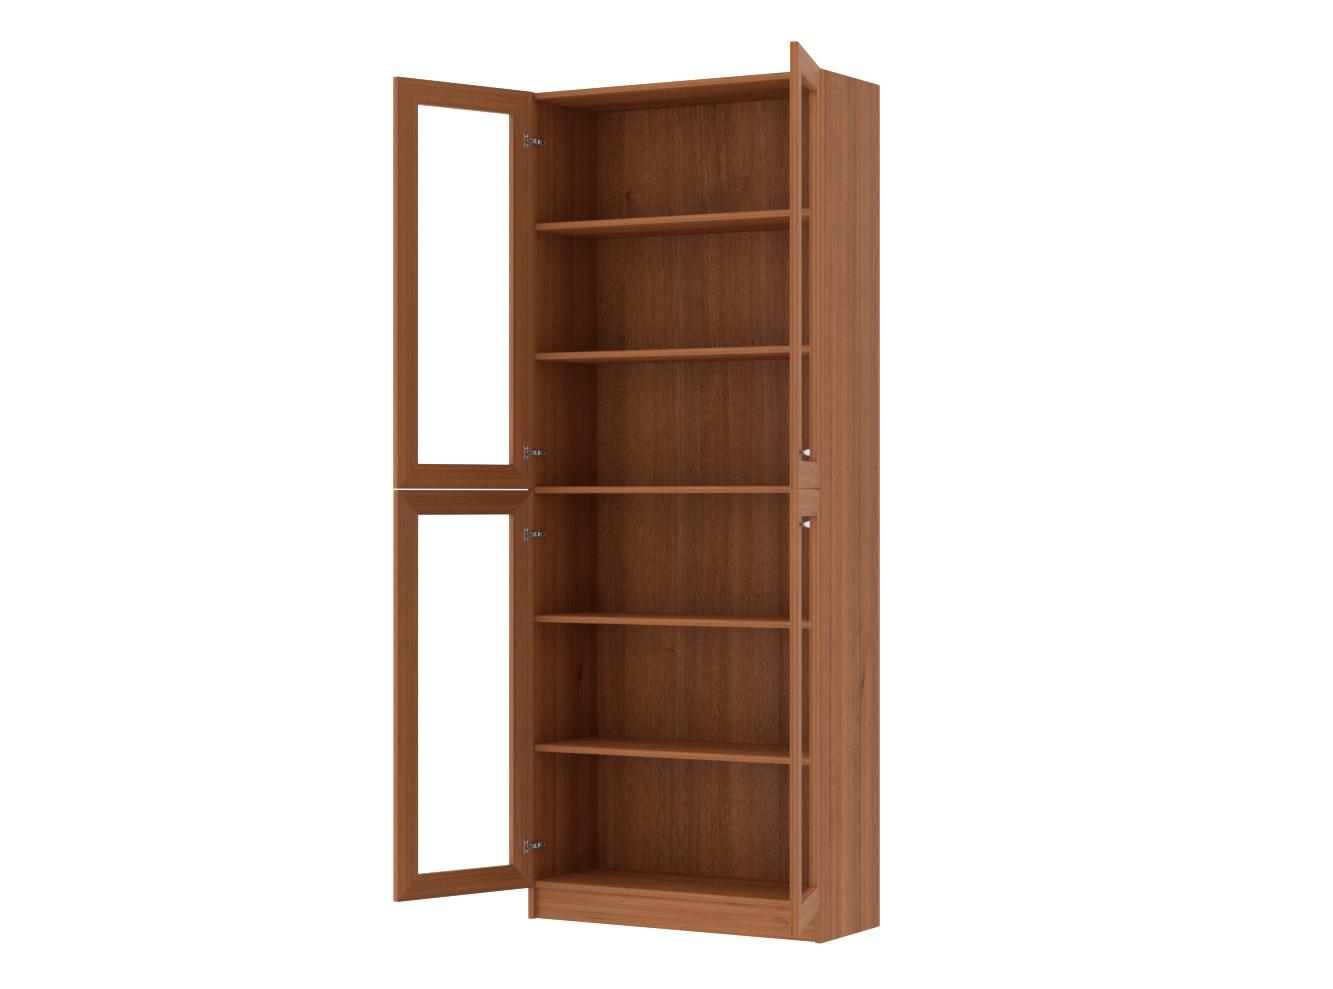 Изображение товара Книжный шкаф Билли 335 walnut guarneri ИКЕА (IKEA), 80x30x202 см на сайте adeta.ru